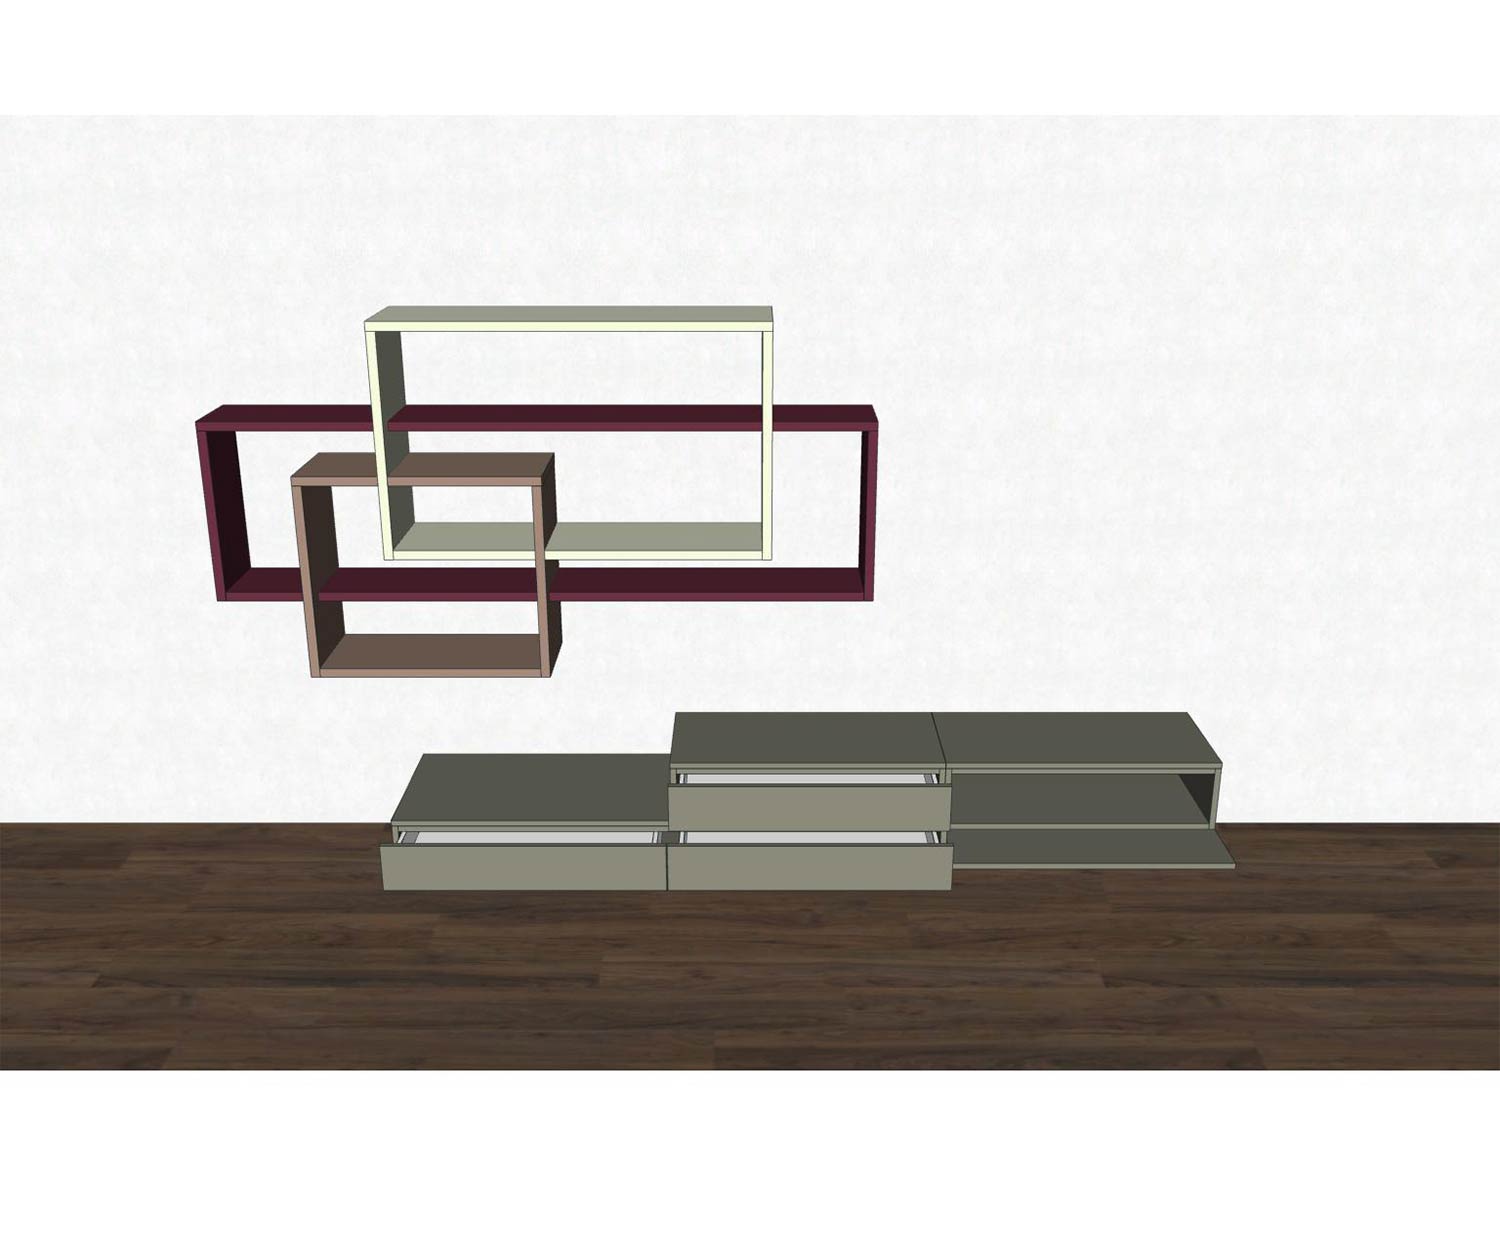 Livitalia Design Wohnwand C59 mit geöffneten Elementen farbig markiert